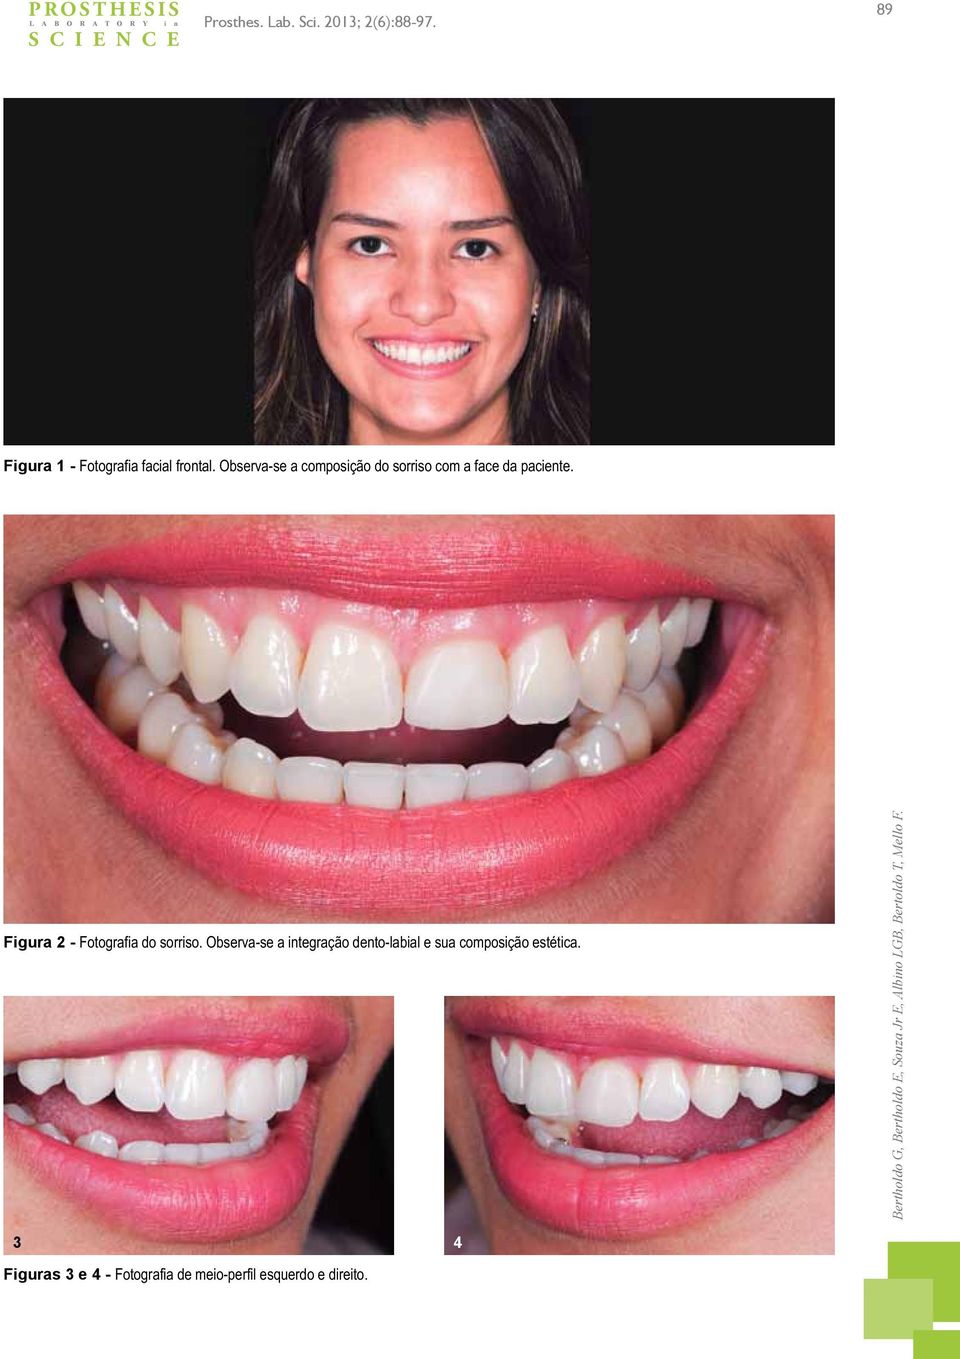 Figura 2 - Fotografia do sorriso. Observa-se a integração dento-labial e sua composição estética.